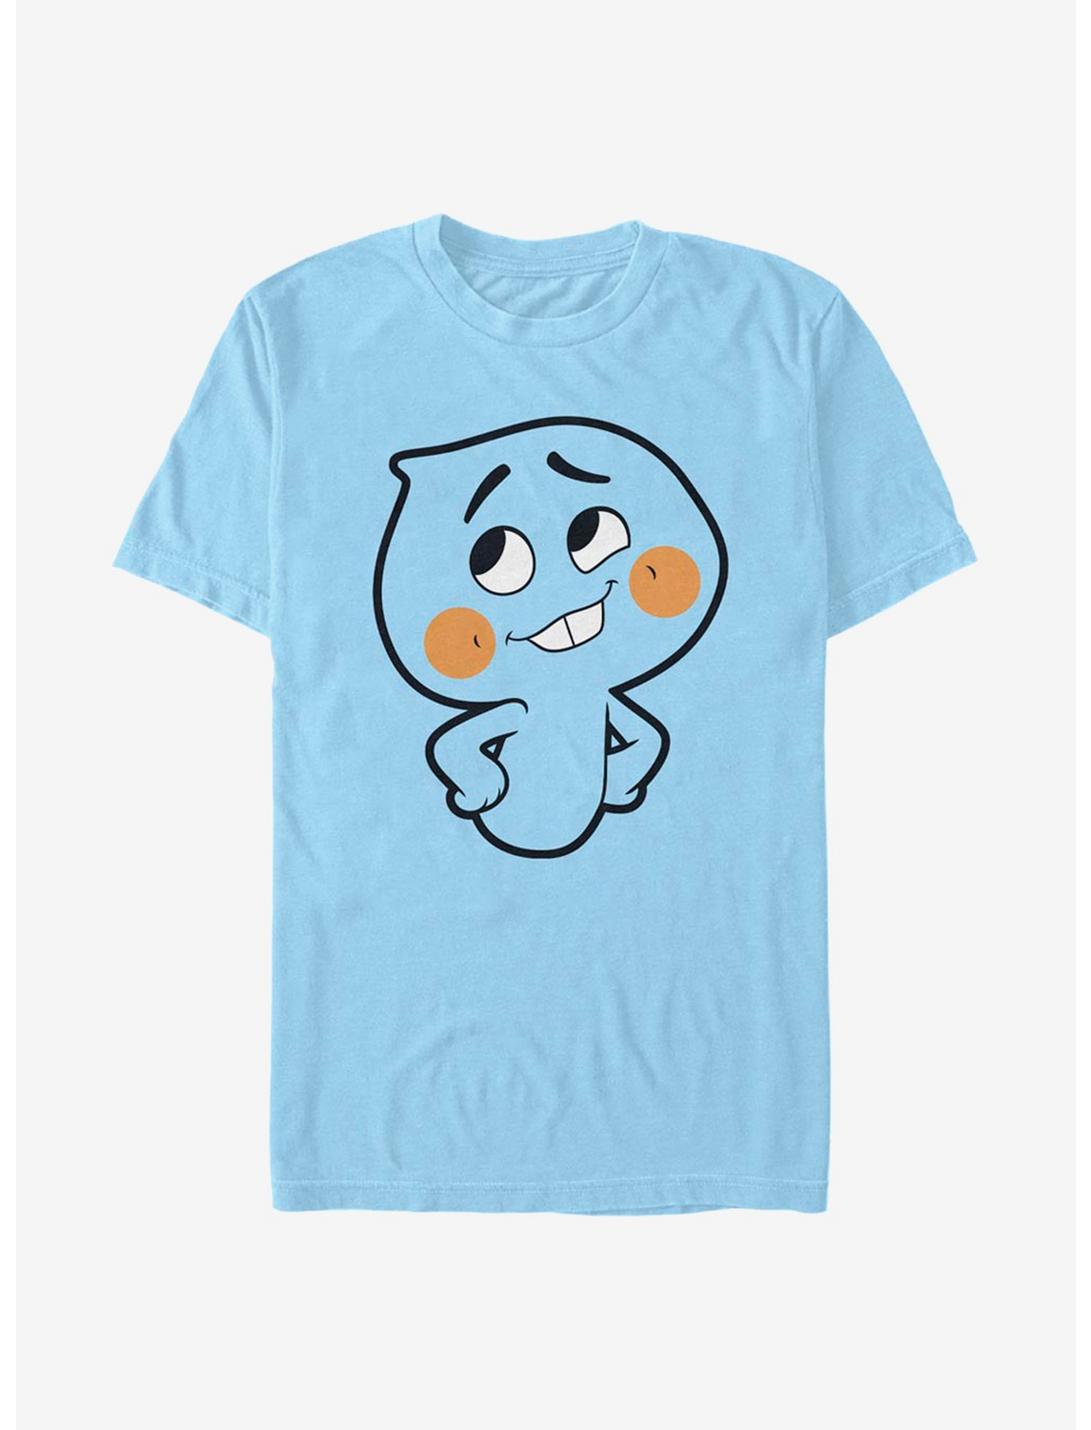 Plus Size Disney Pixar Soul Oversized Soul T-Shirt, LT BLUE, hi-res